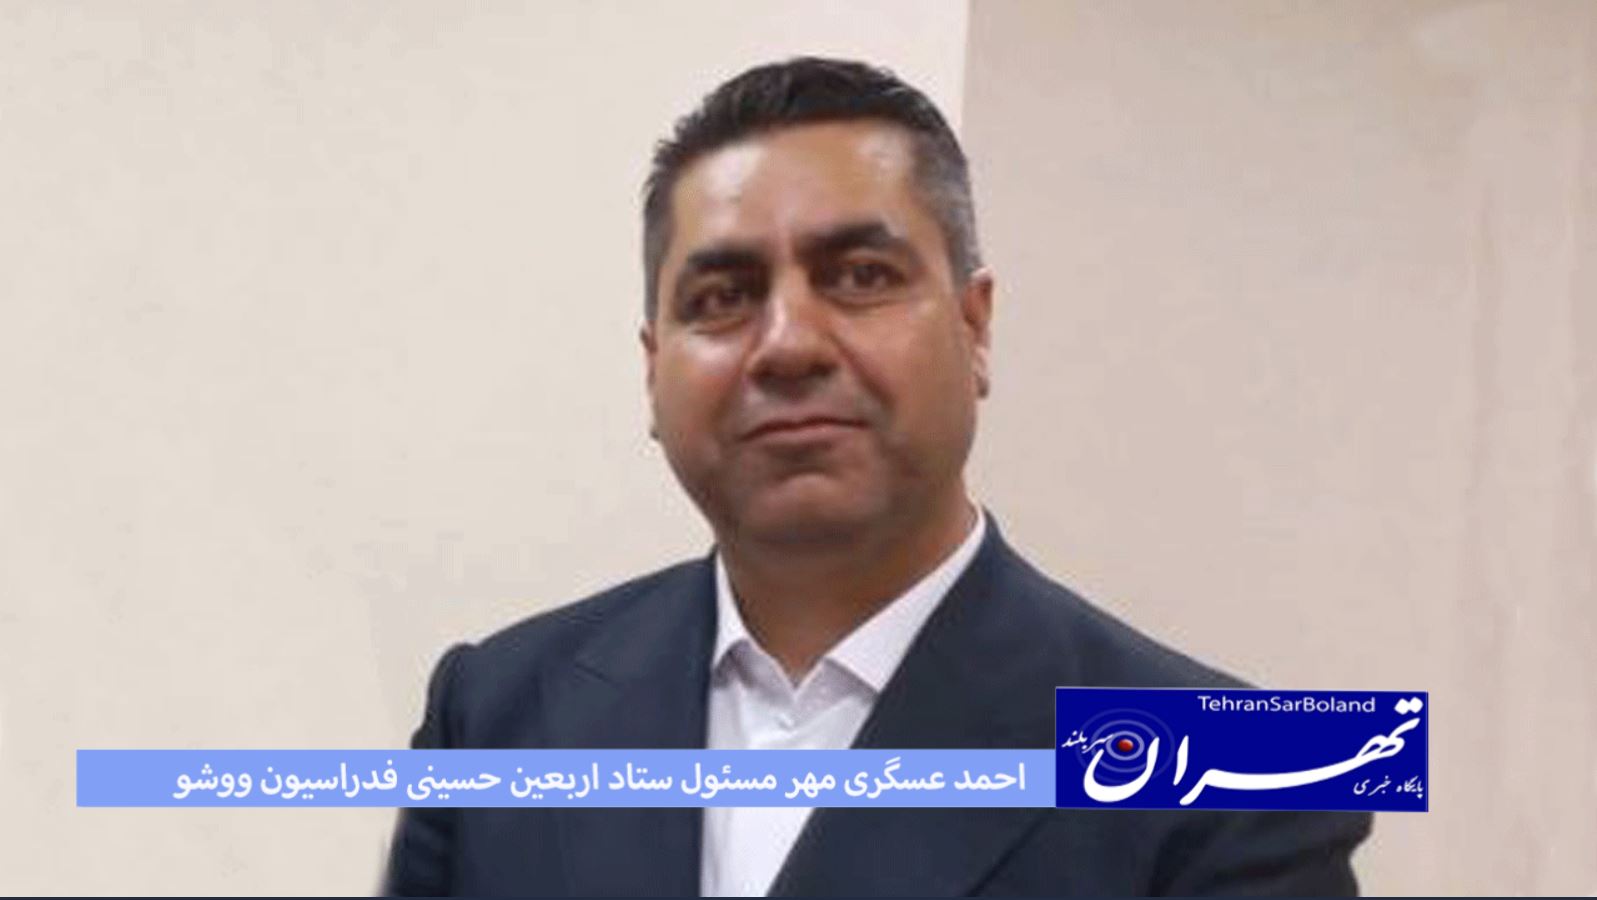 ووشو/احمدعسگری مهر مسئول ستاد برگزاری اربعین حسینی شد